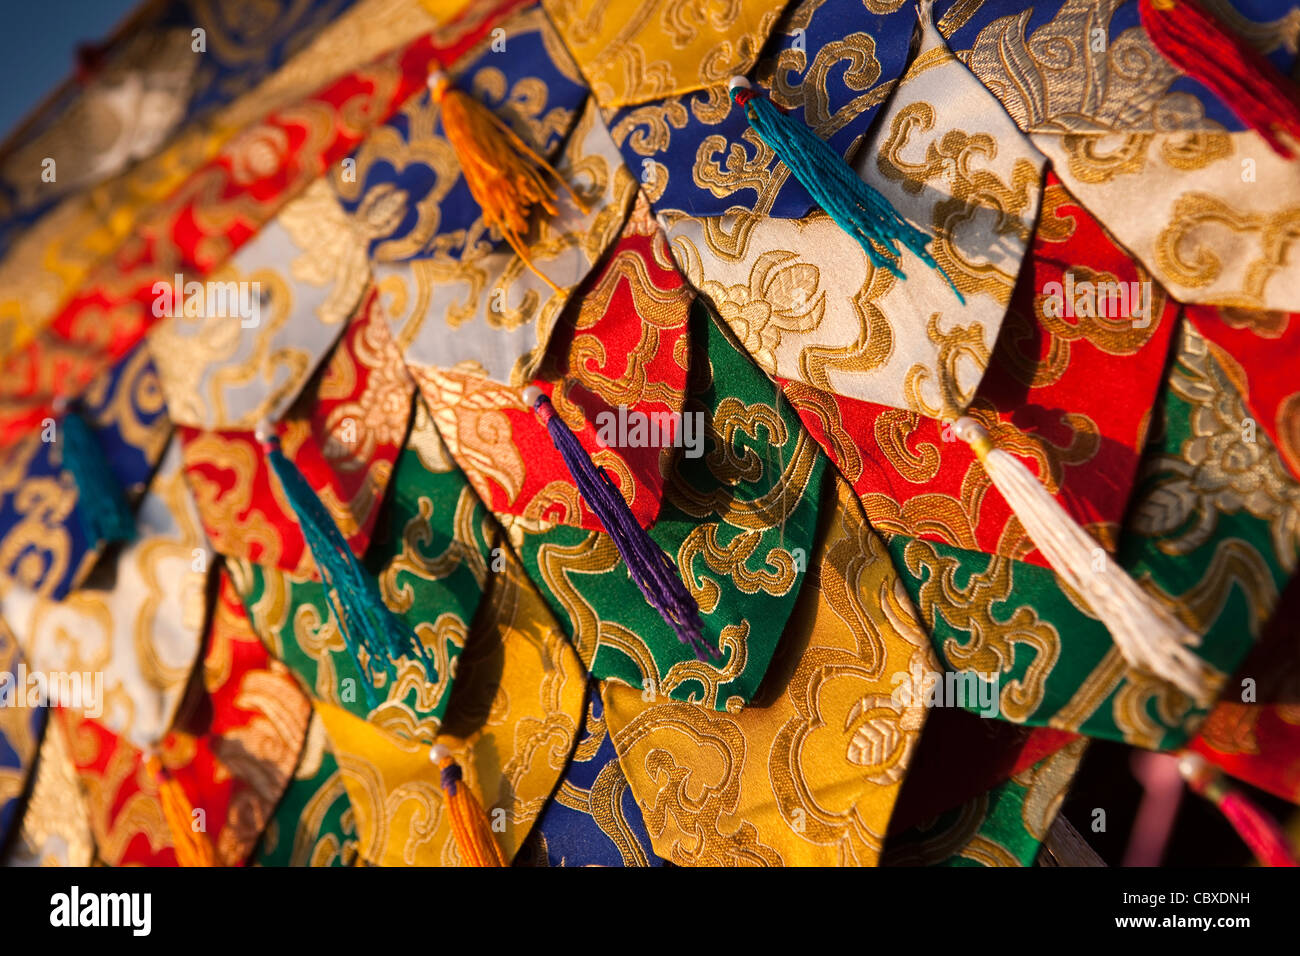 L'Inde, le Bihar, Bodhgaya, marché tibétain, colouful textiles temple bouddhiste Banque D'Images